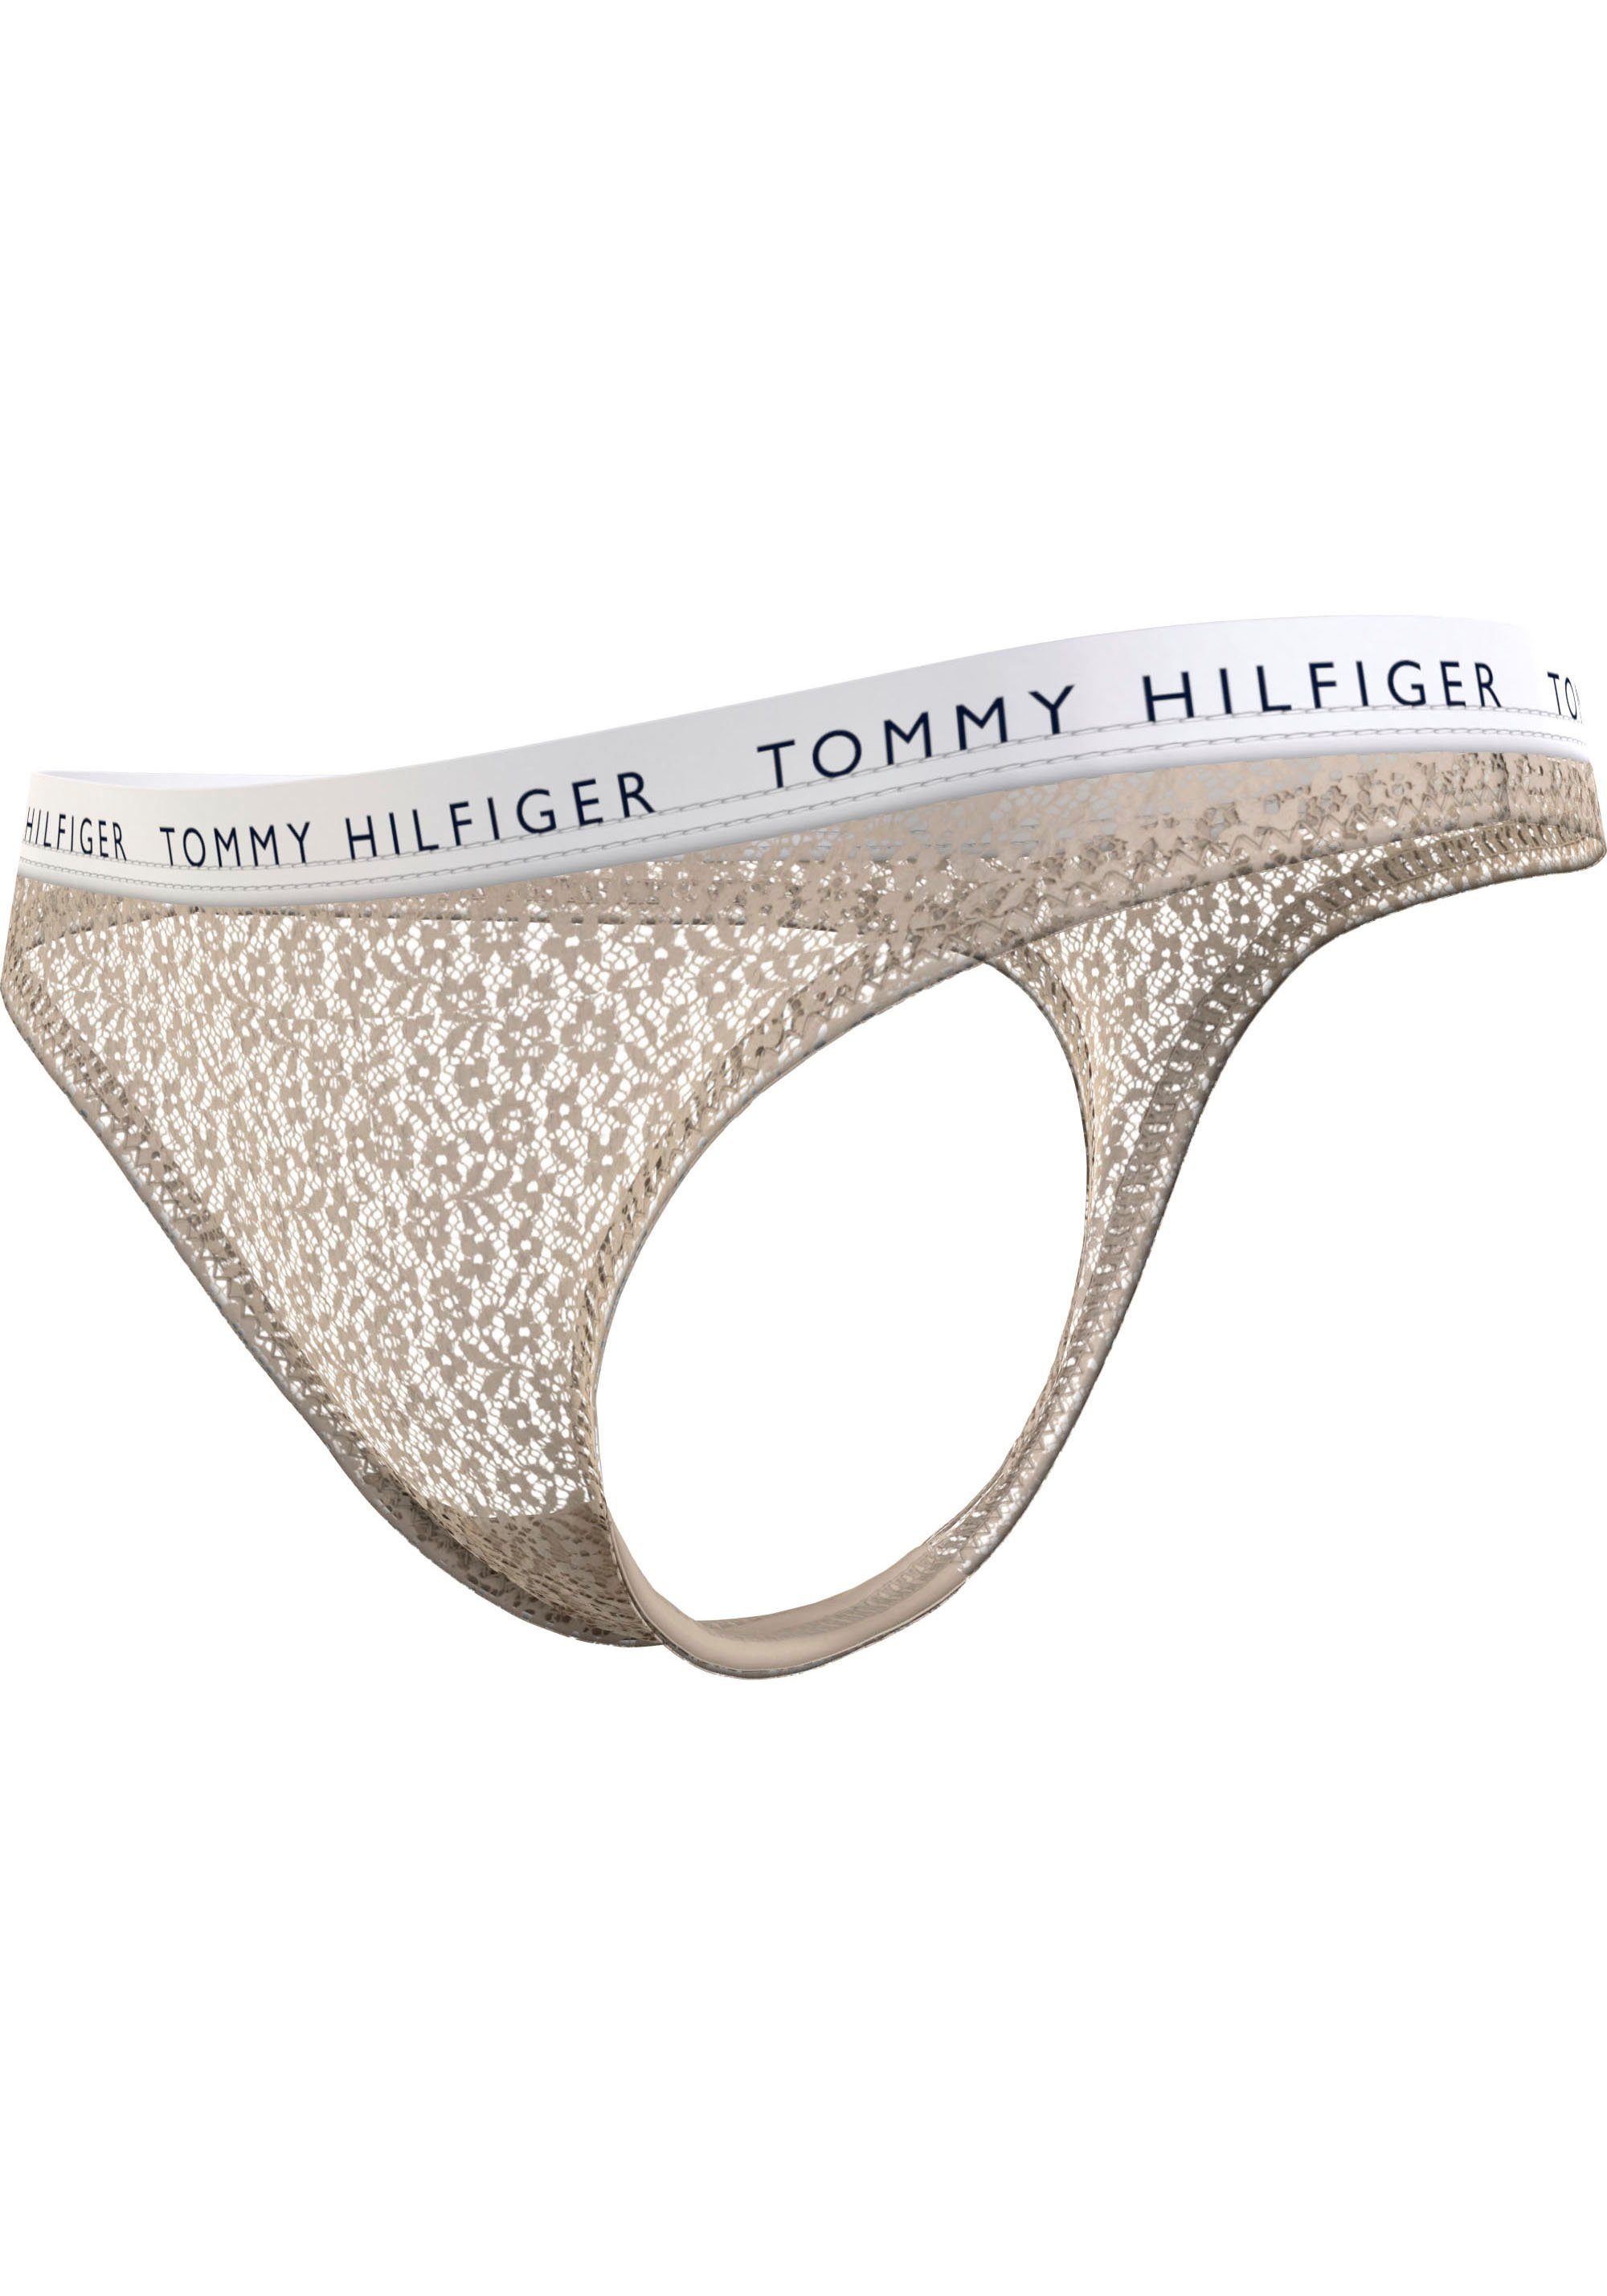 3er-Pack) Underwear 3er T-String Hilfiger Tommy (Packung, im 3-St., Set